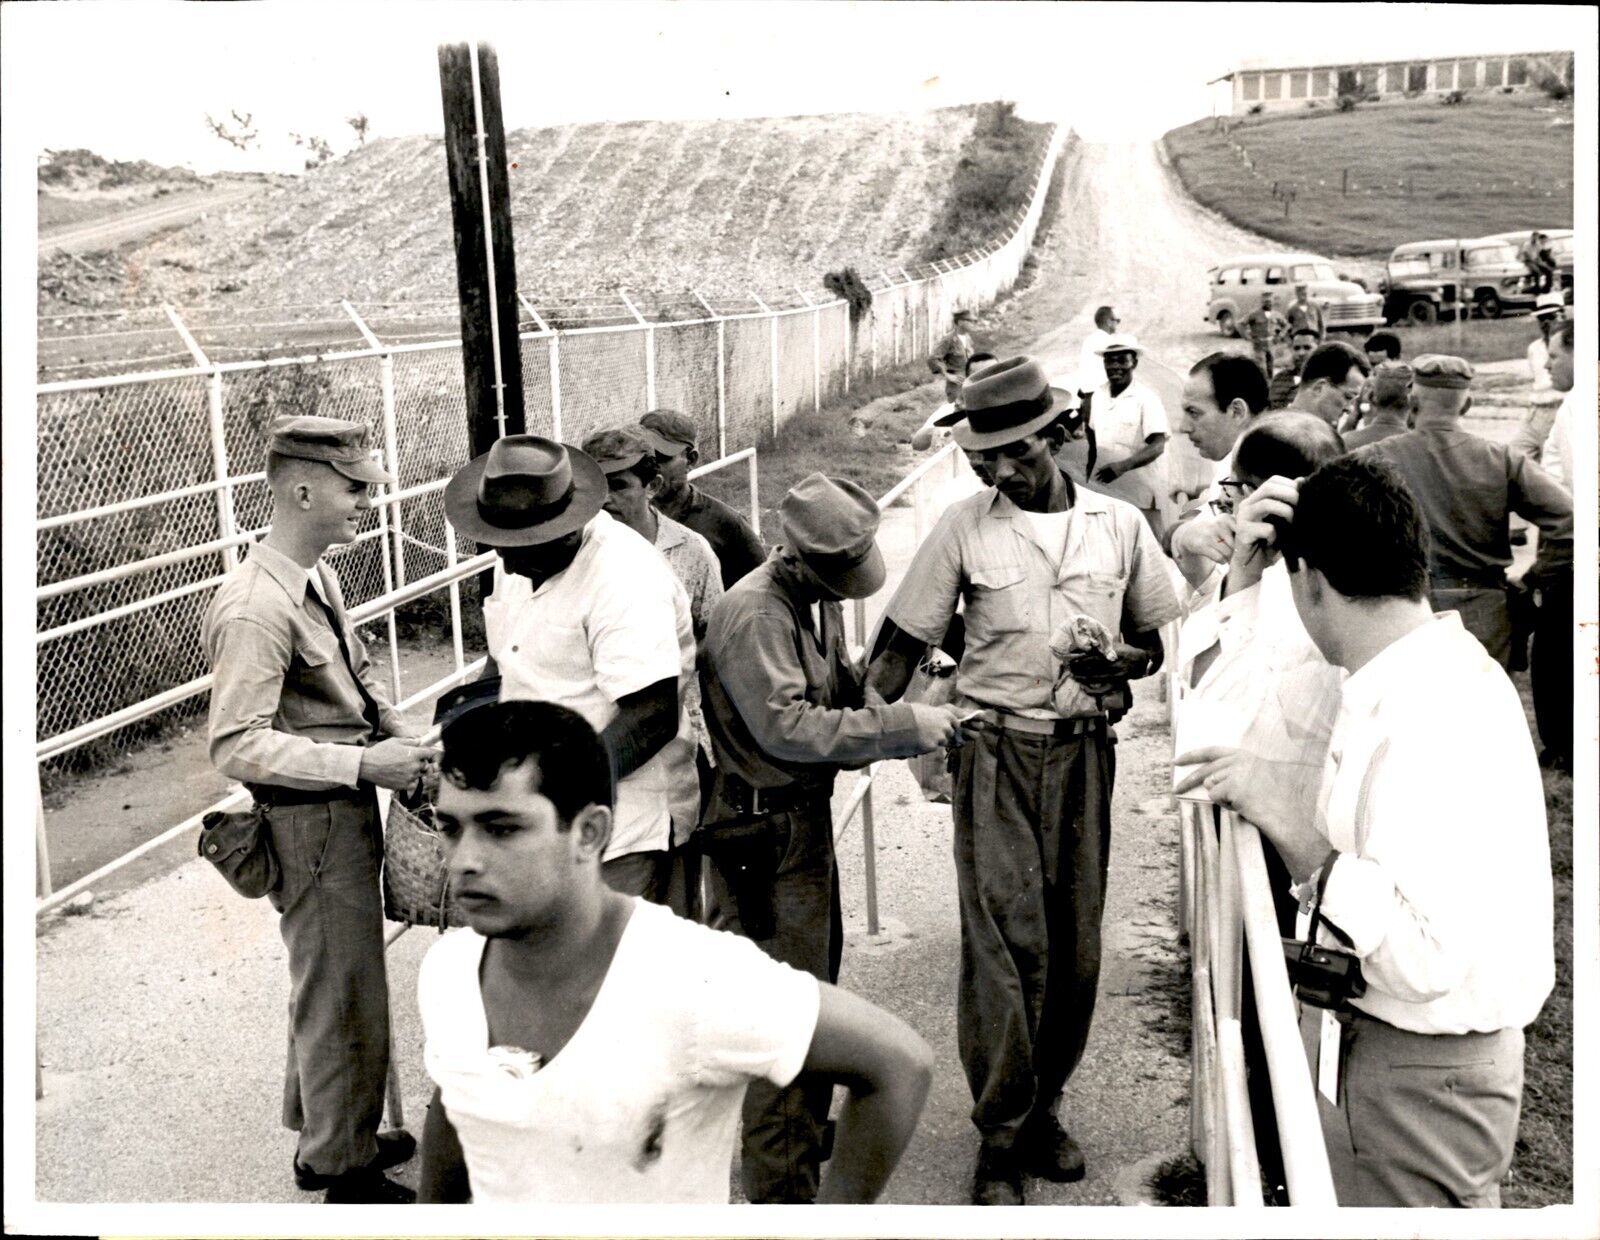 LG55 1965 Original UPI Photo CHECKING WORKERS US NAVAL BASE @ GUANTANAMO CUBA